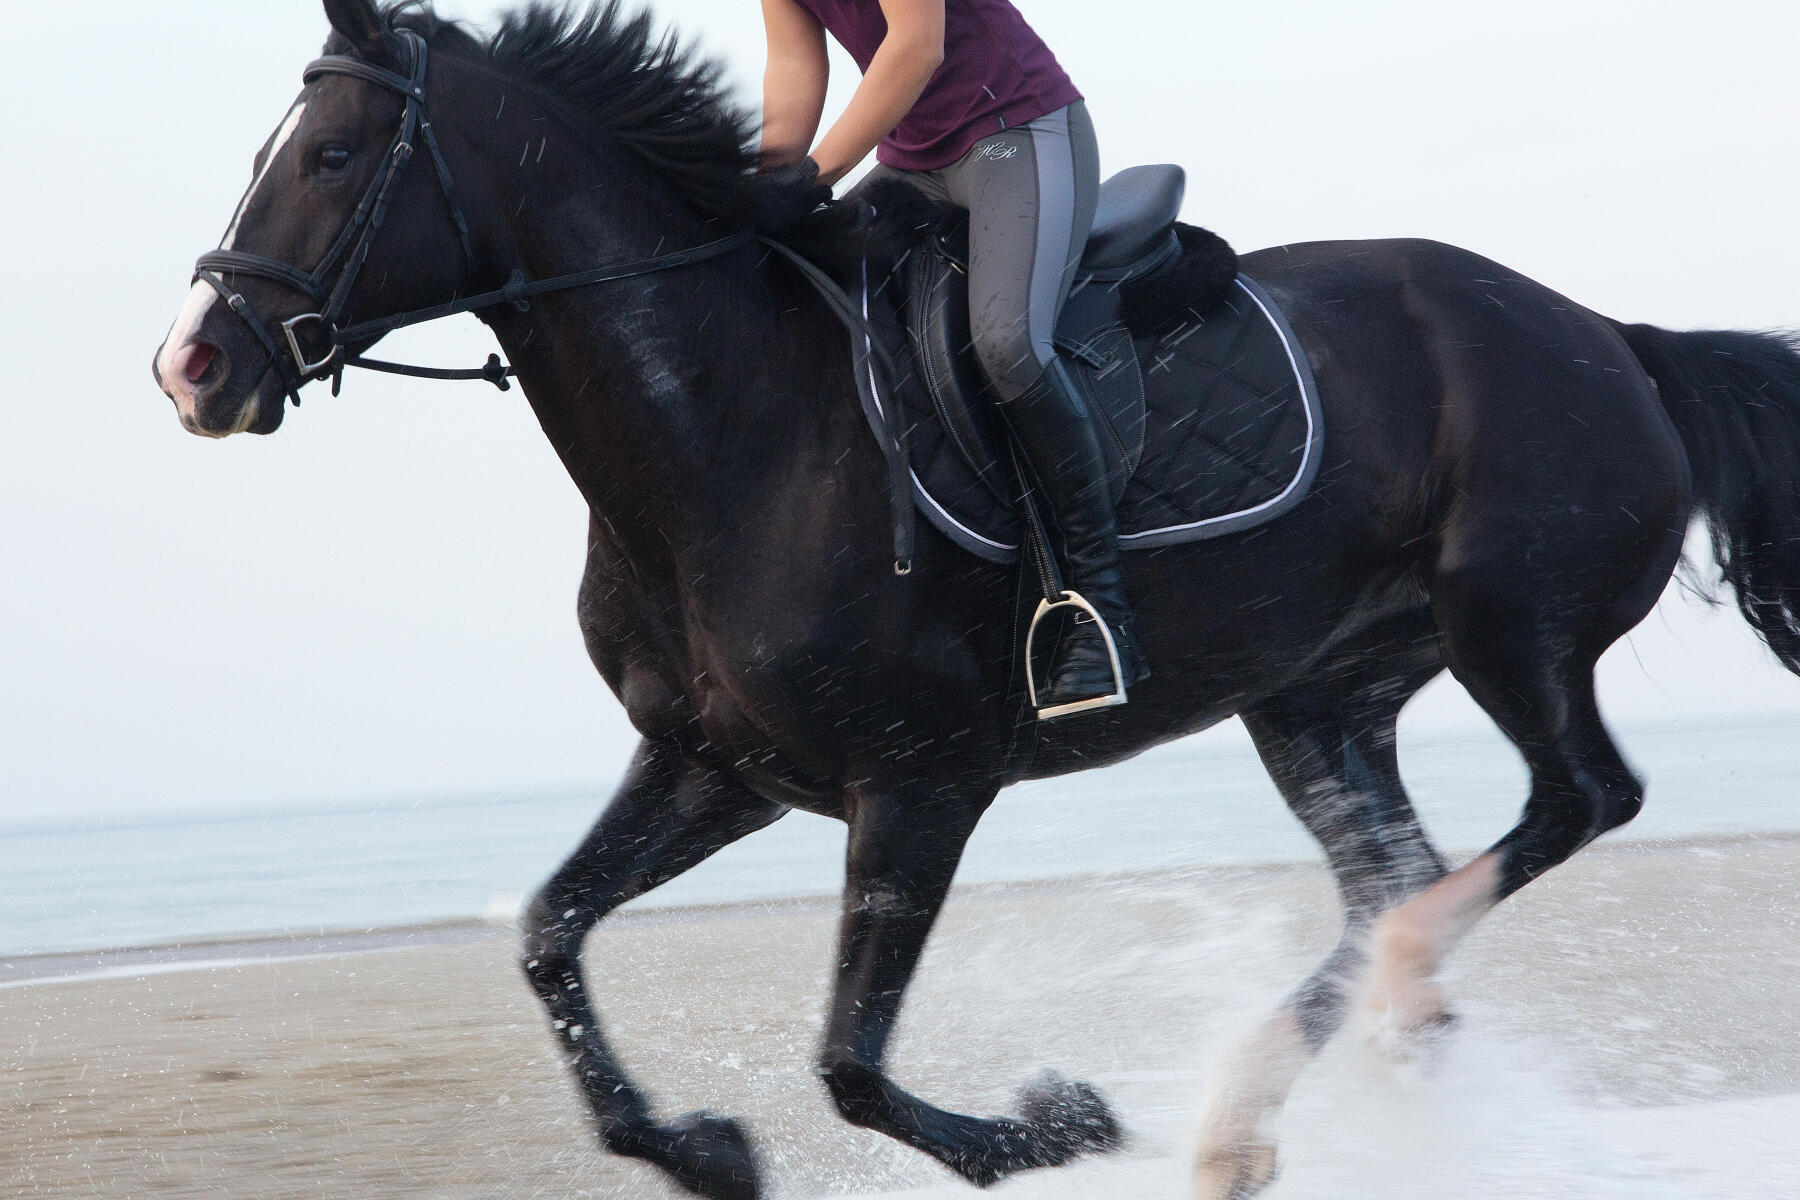 Cavalière et son cheval noir en train de galoper sur une plage